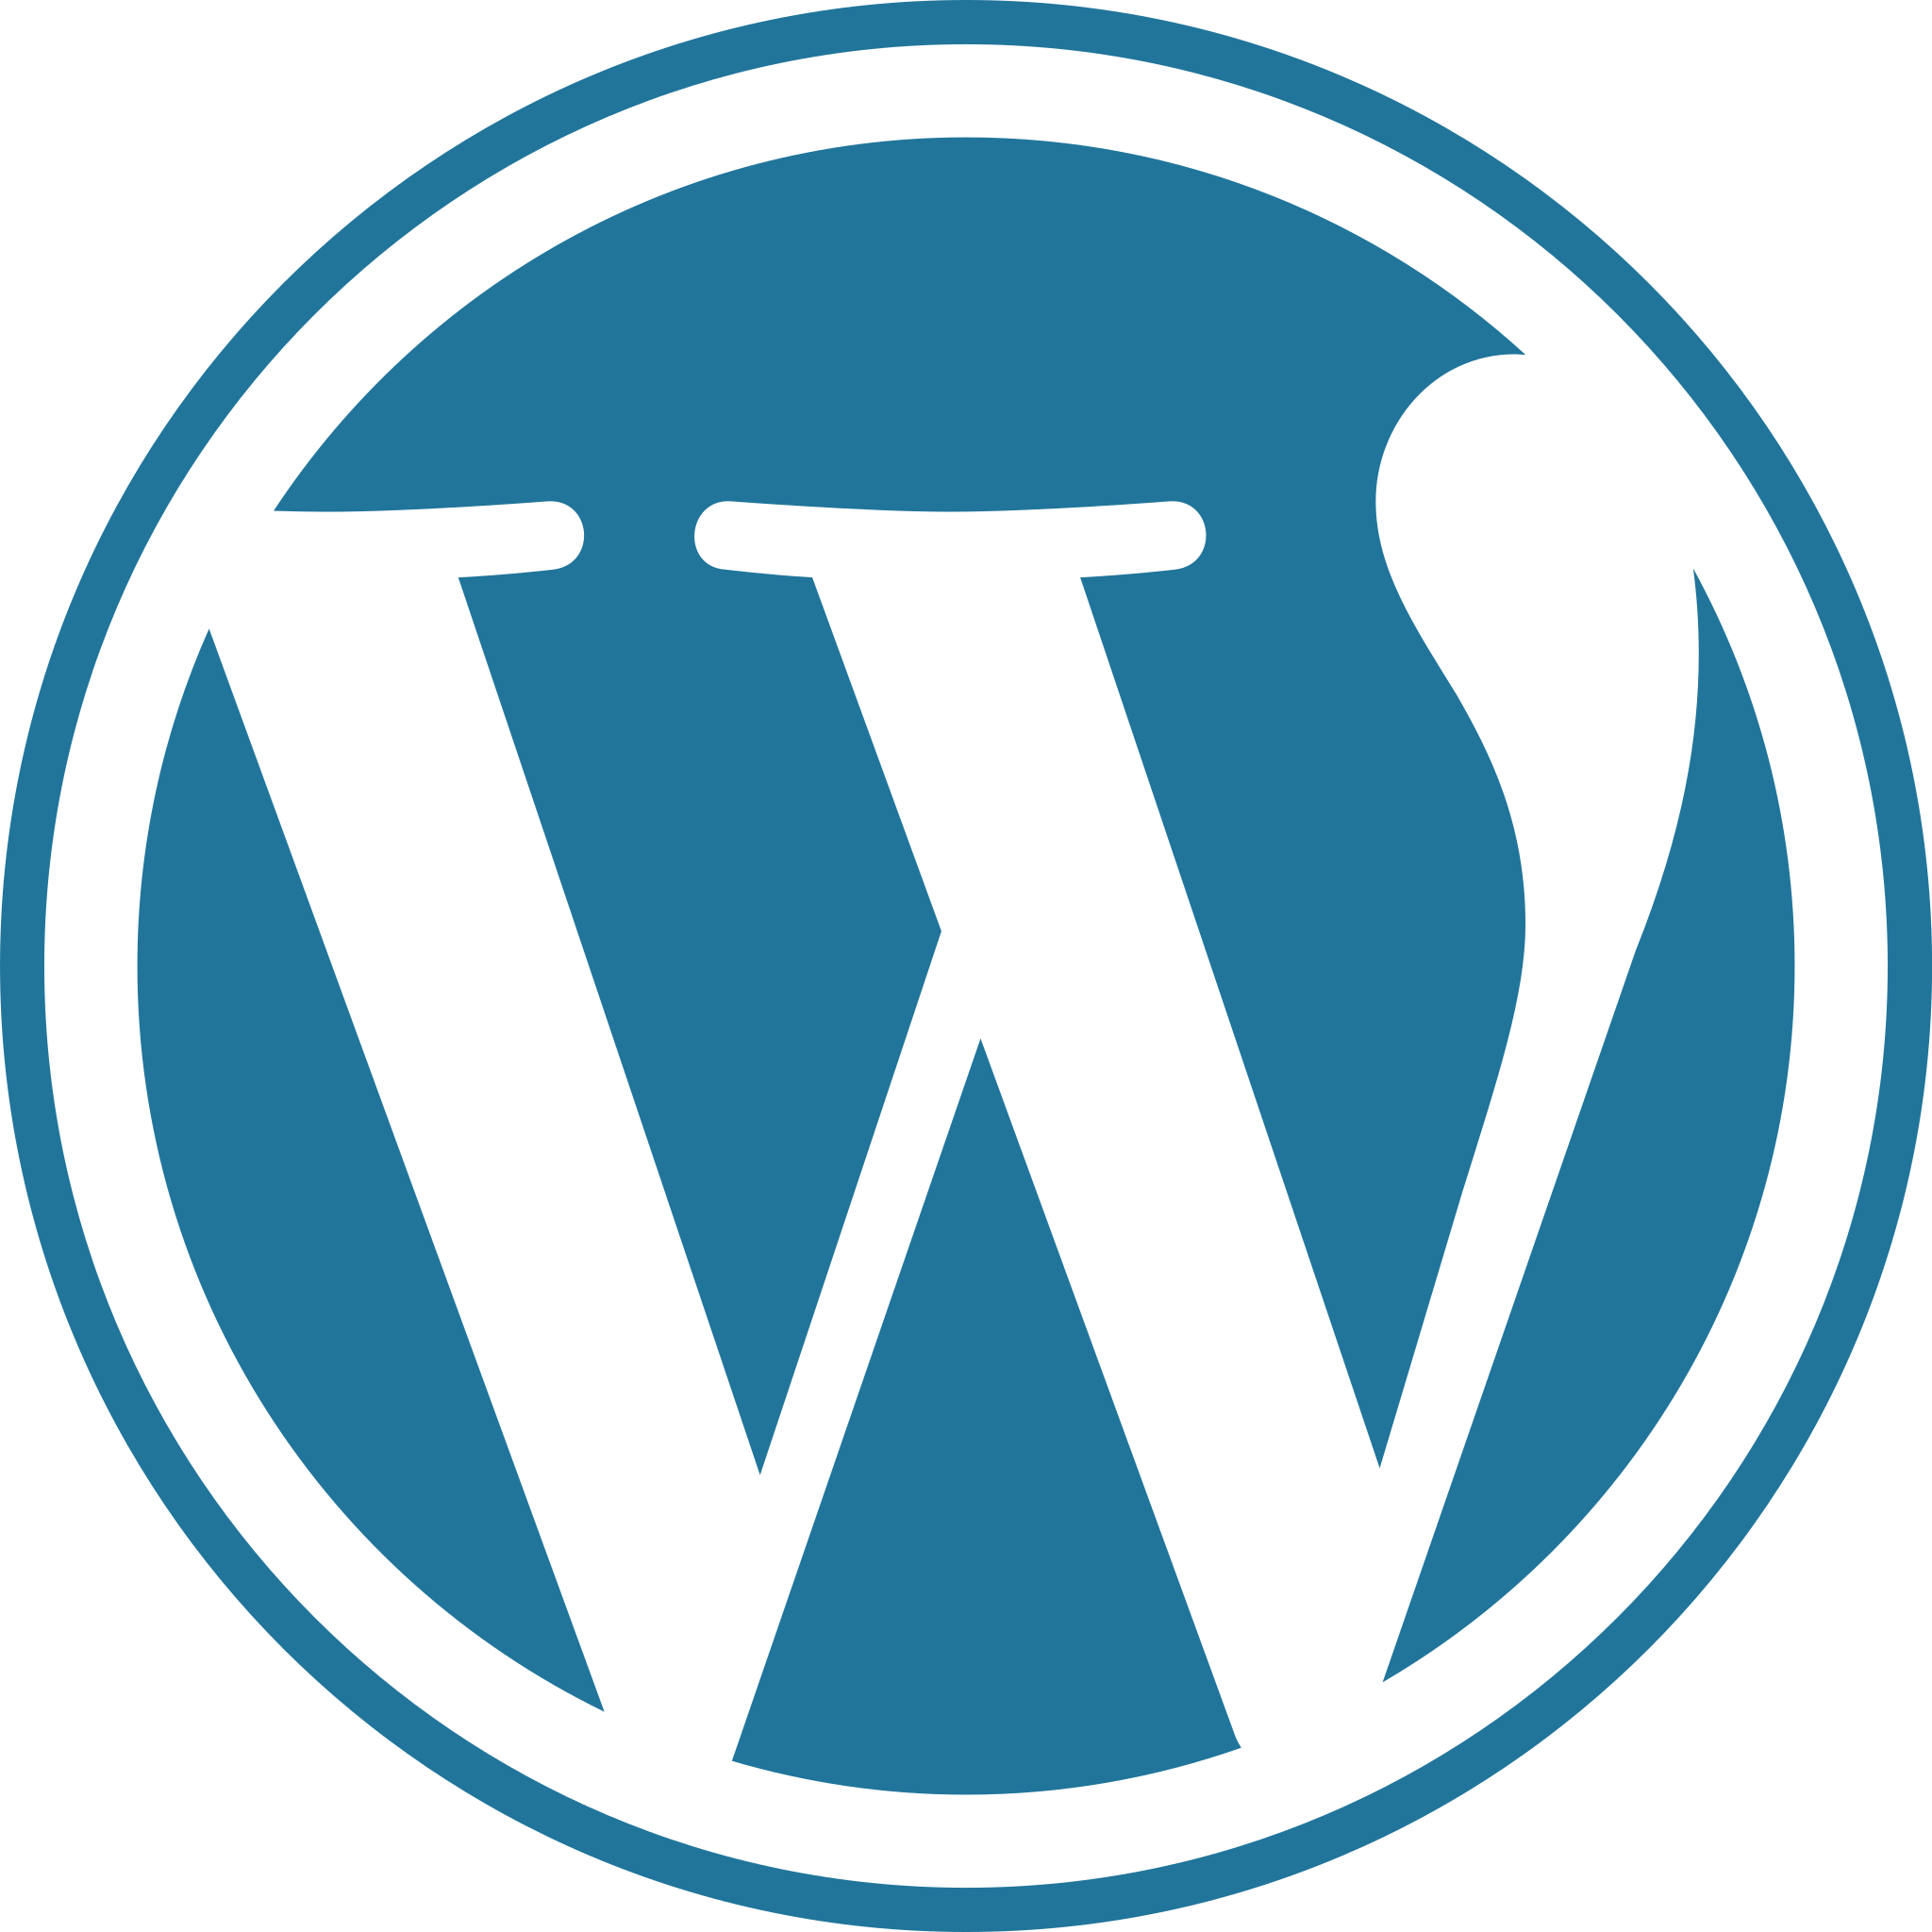 El precio página web WordPress varía desde los 600 hasta los 5.000 euros. Depende del tipo de sitio que quieras hacer y de la mano de quién lo construyas.